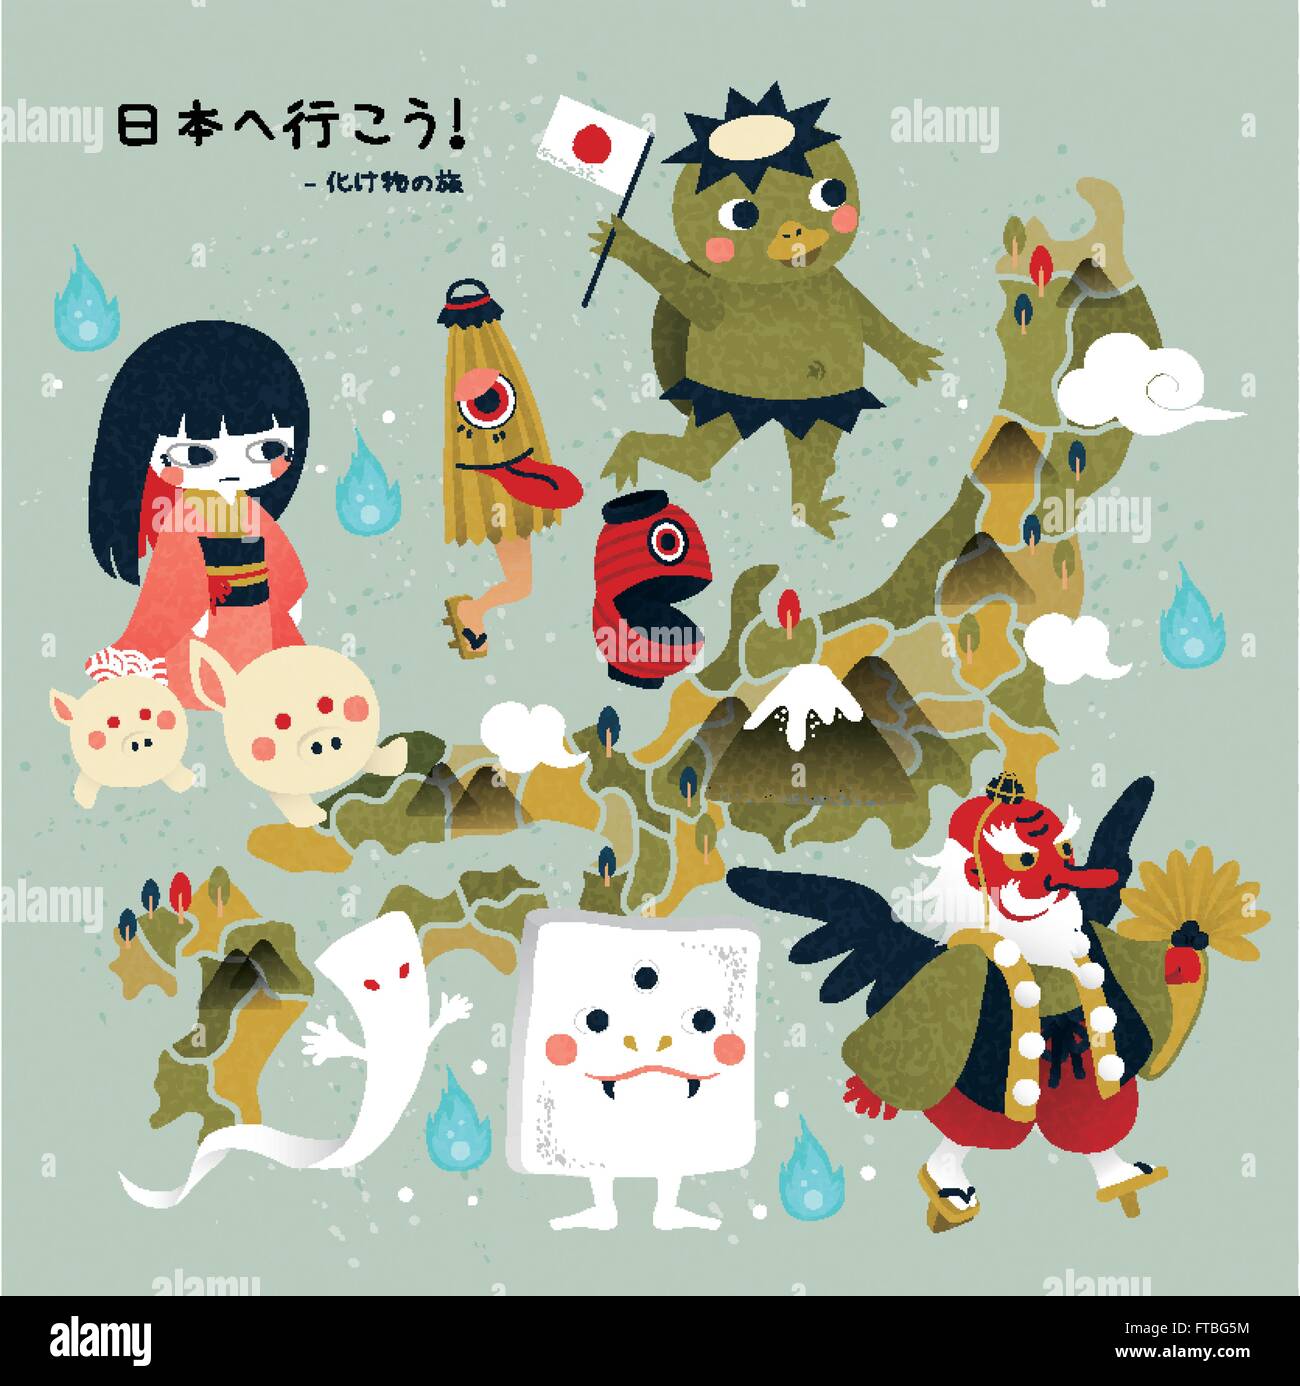 Lovely Japan Monster Travel Map Let S Go To Japan And Monster Travel In Japanese Stock Vector Image Art Alamy